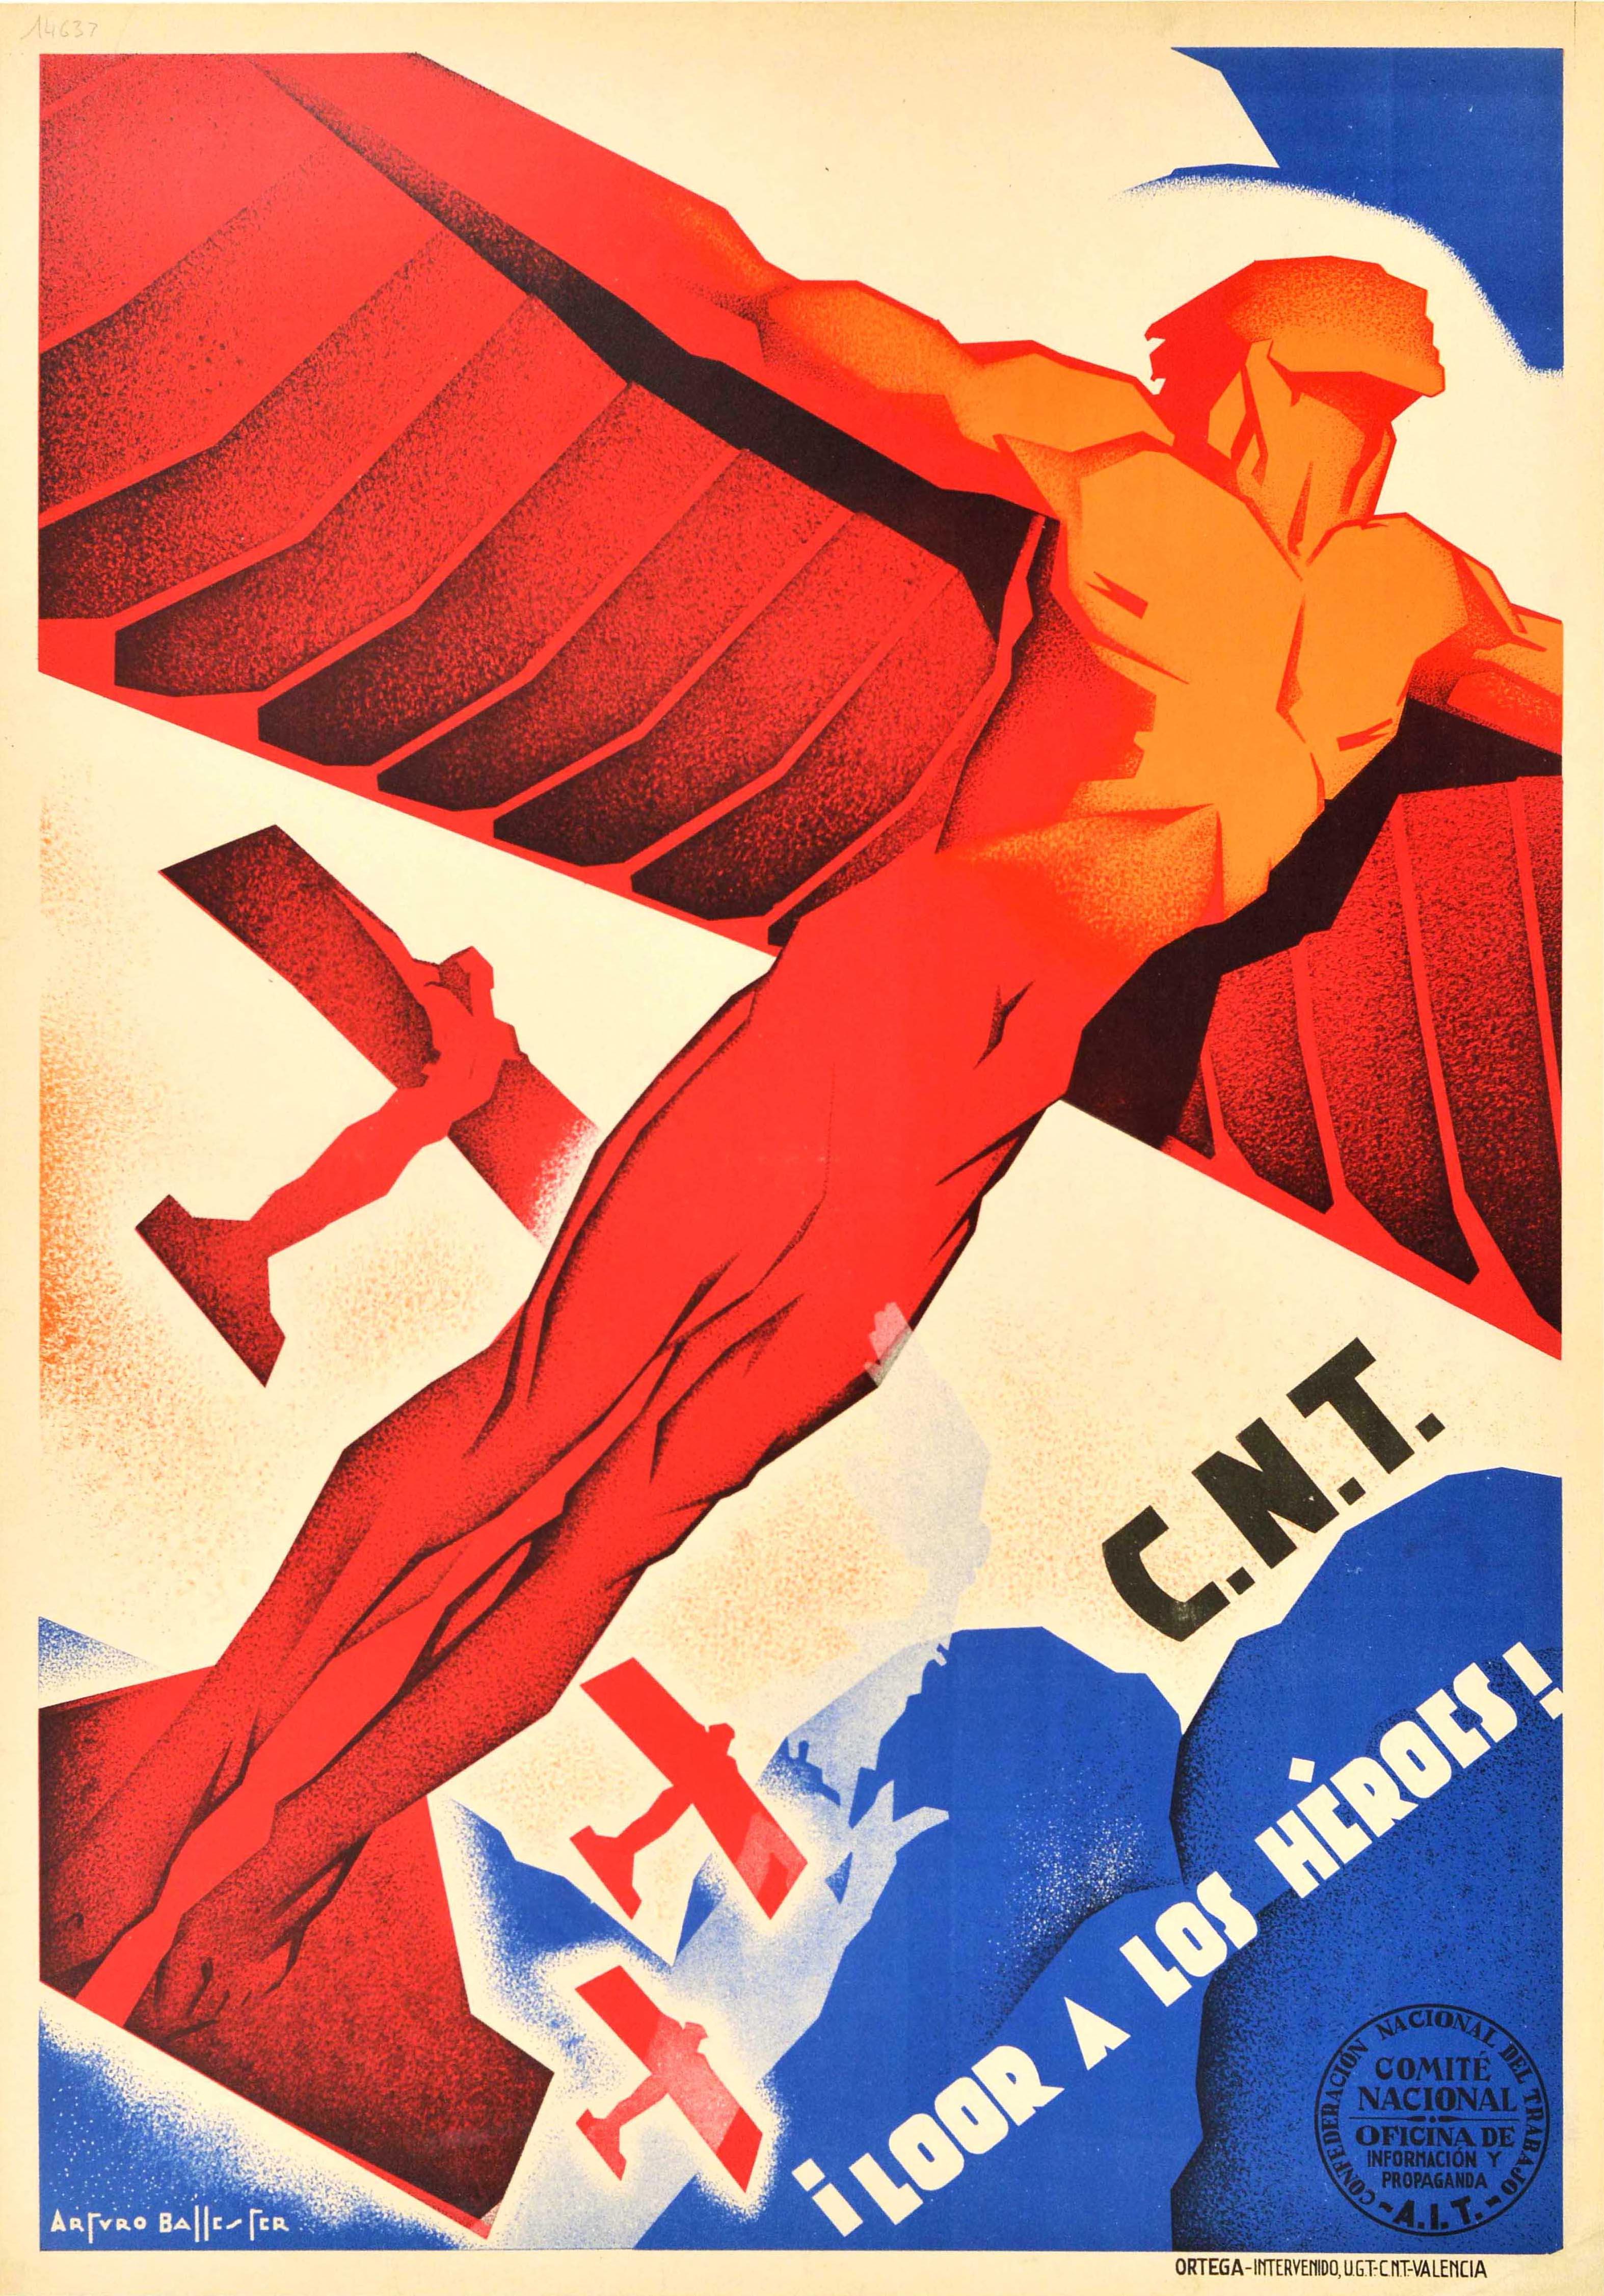 Originales Propagandaplakat aus dem Spanischen Bürgerkrieg - C.N.T Loor a los Heroes! / CNT Ein Hoch auf die Helden! Dynamischer Entwurf des spanischen Künstlers Arturo Ballester Marco (1892-1981), der Männer als Flugzeuge mit Flügeln an den